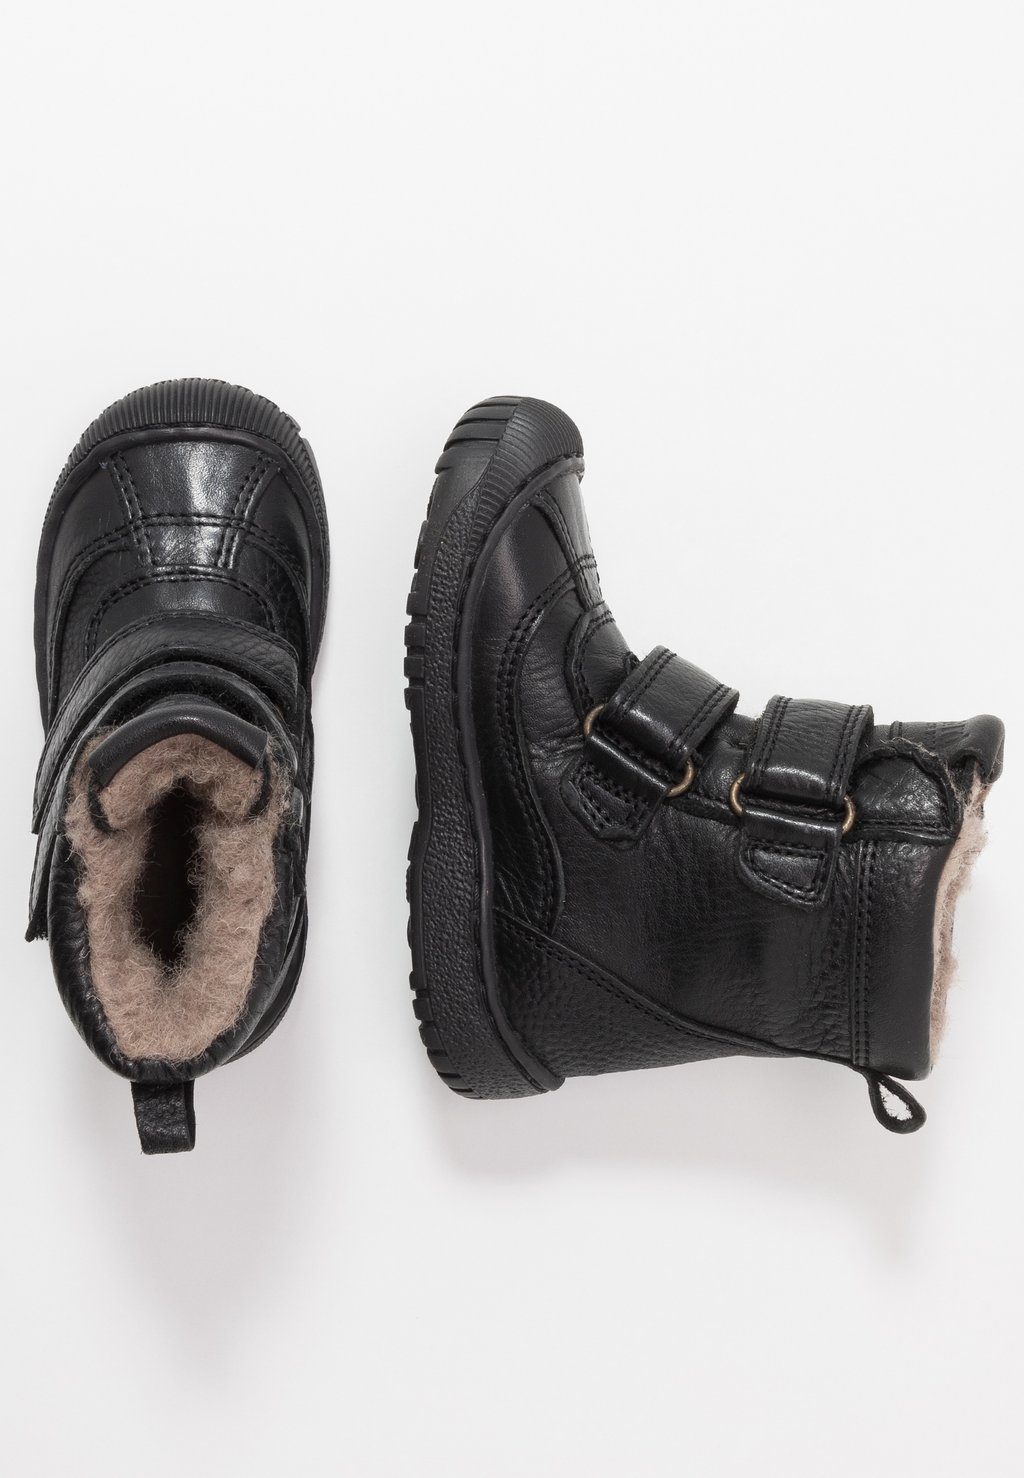 Снегоступы/зимние ботинки Bisgaard, цвет black